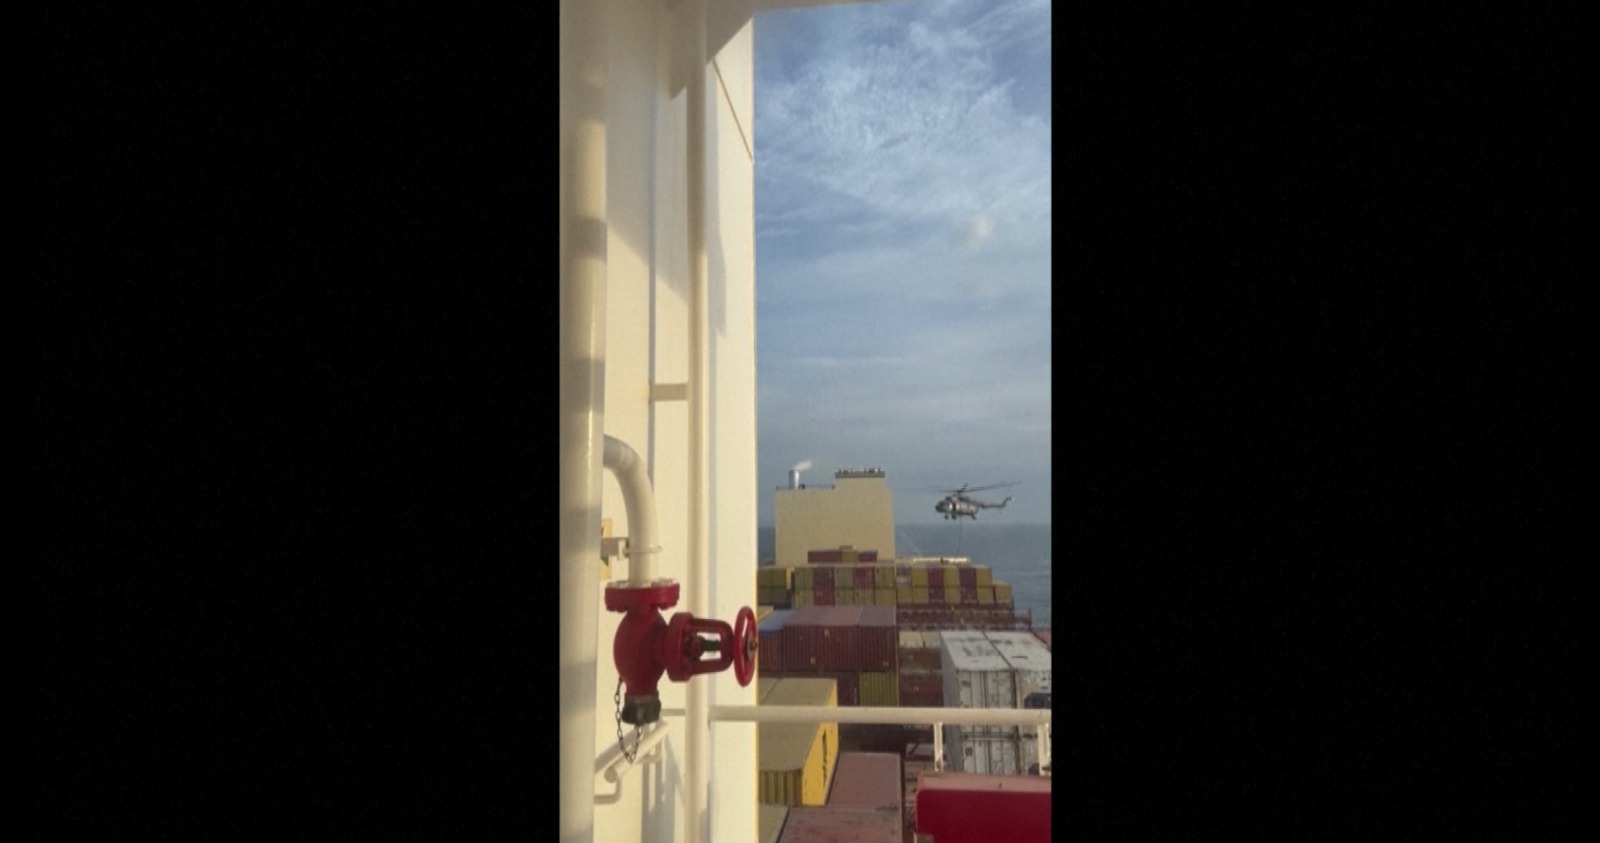 Captura de vídeo del buque portacontenedores MSC Aries.